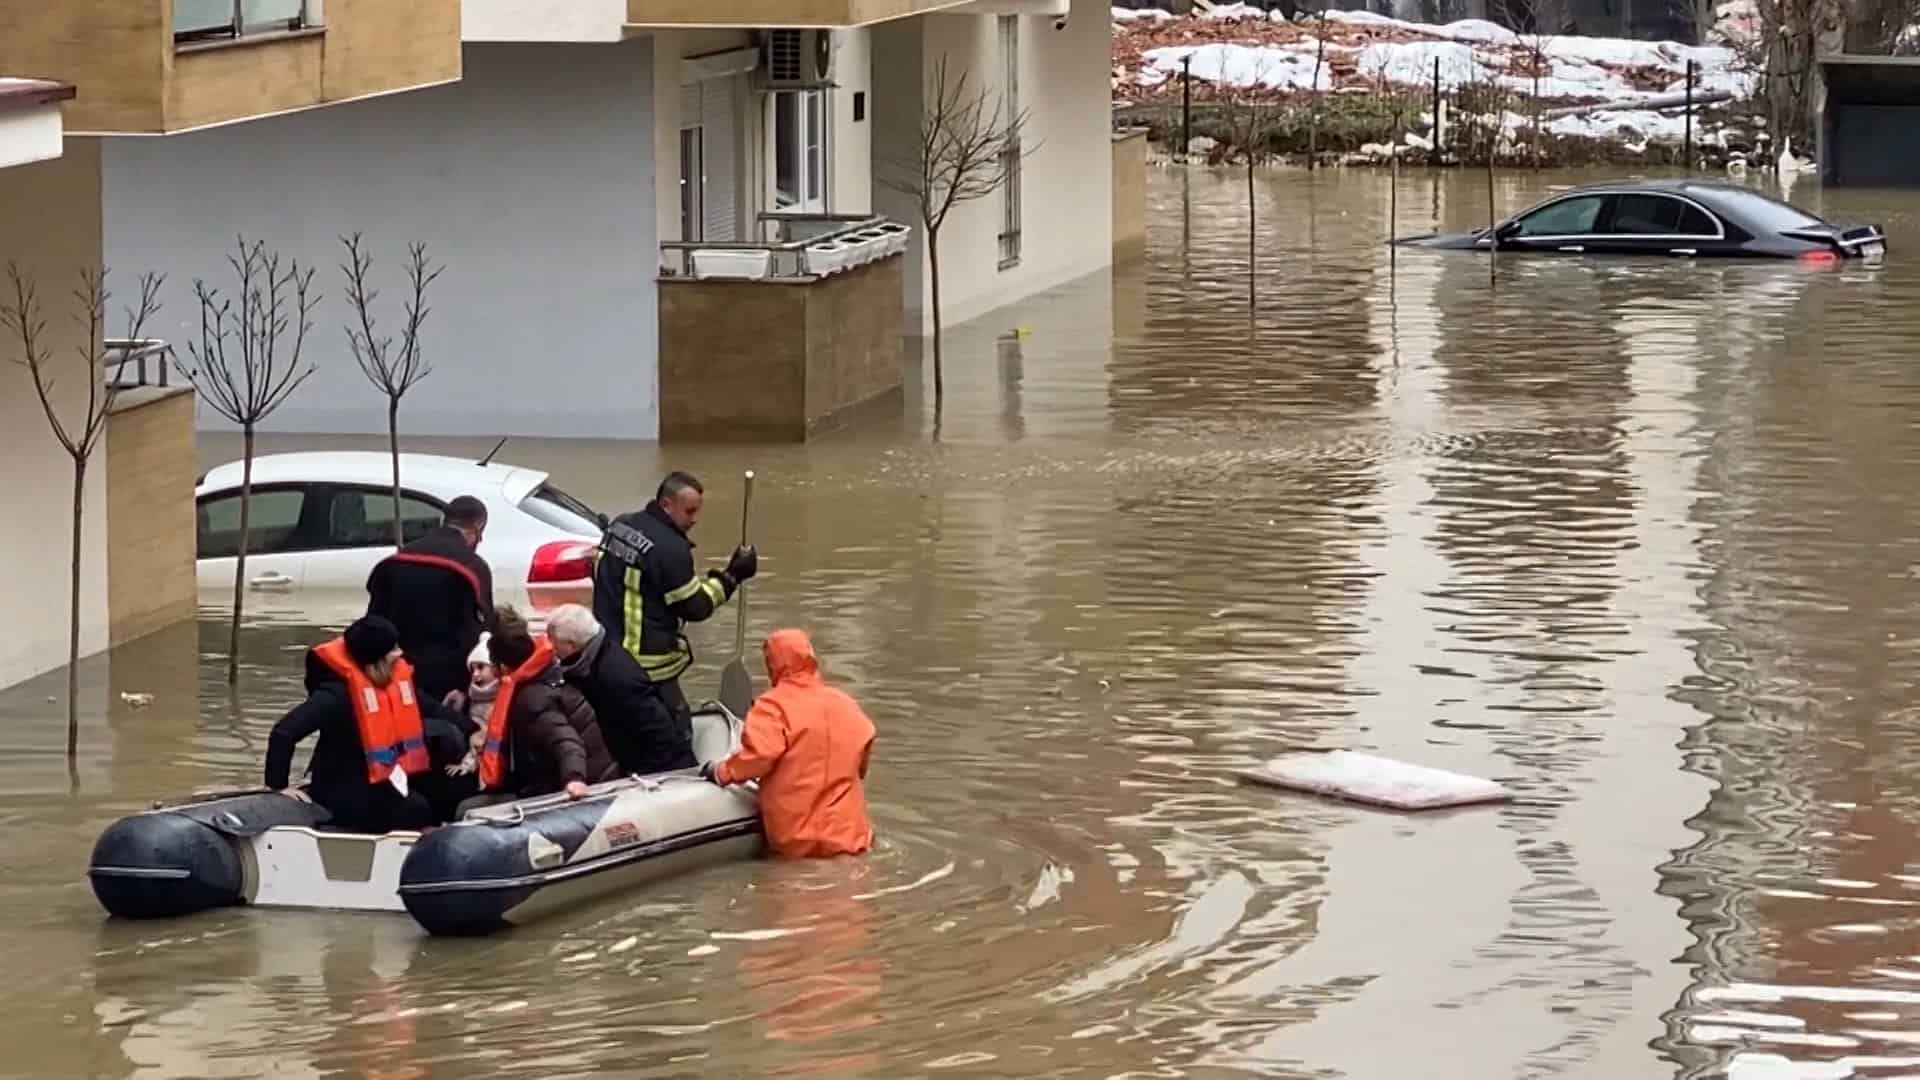 Највеће поплаве на Косову и Метохији задњих 50 година, преко 200 Срба заробљено у кућама без струје, воде и хране!